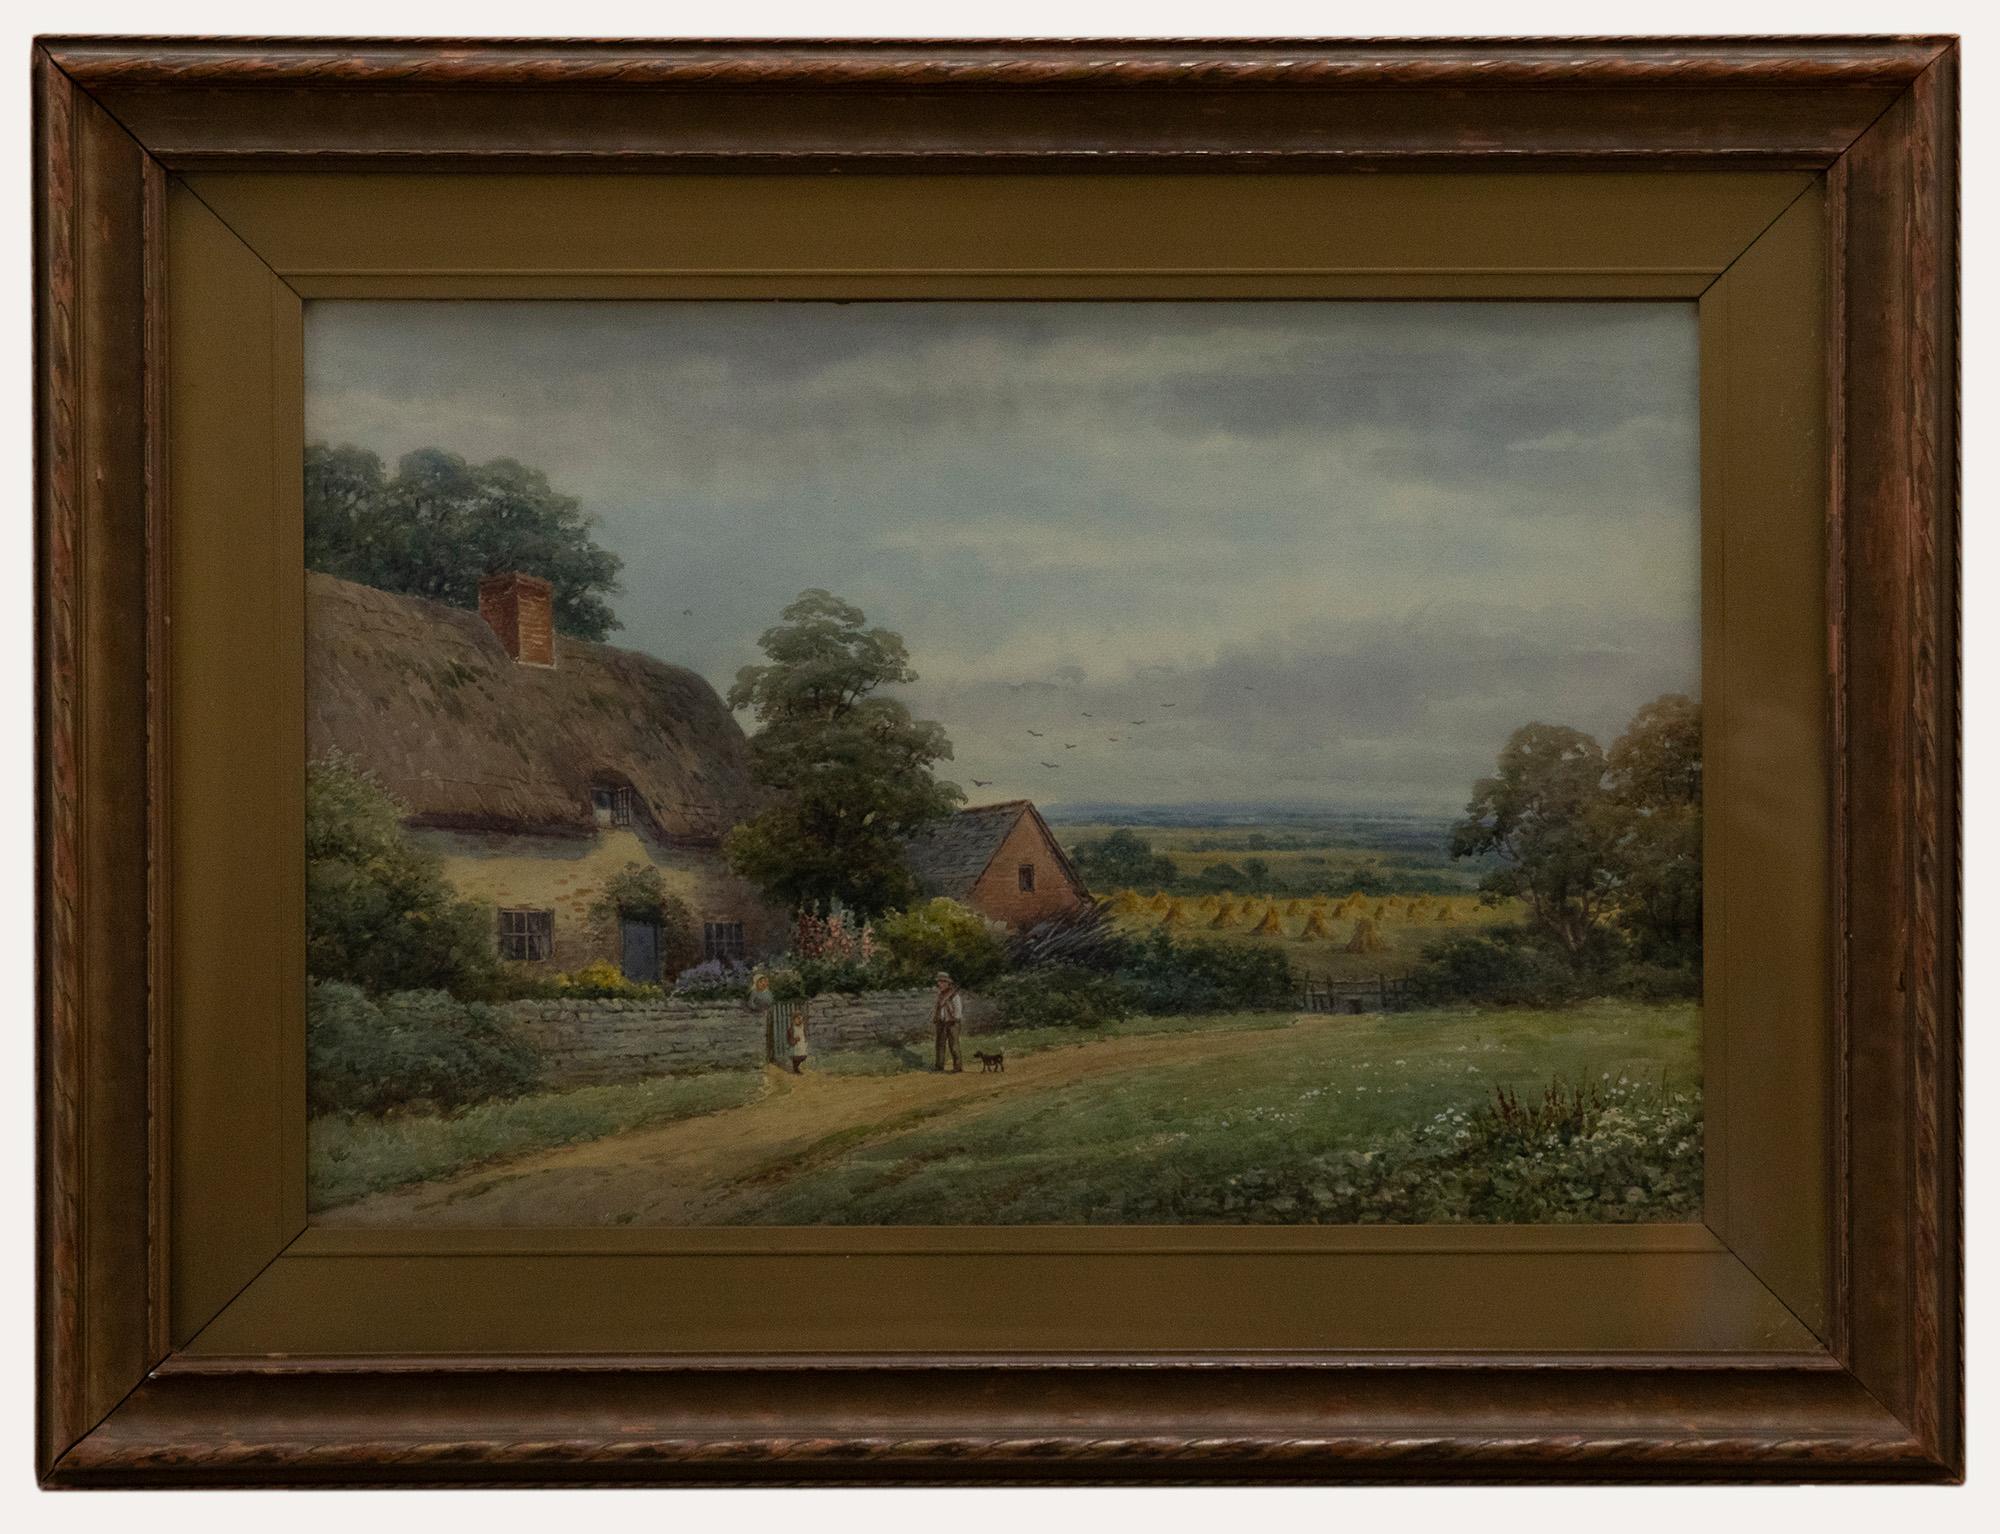 Unknown Landscape Art – Harold Lawes (1865-1940) – gerahmtes Aquarell des frühen 20. Jahrhunderts, Abendessen am Ende des Tages